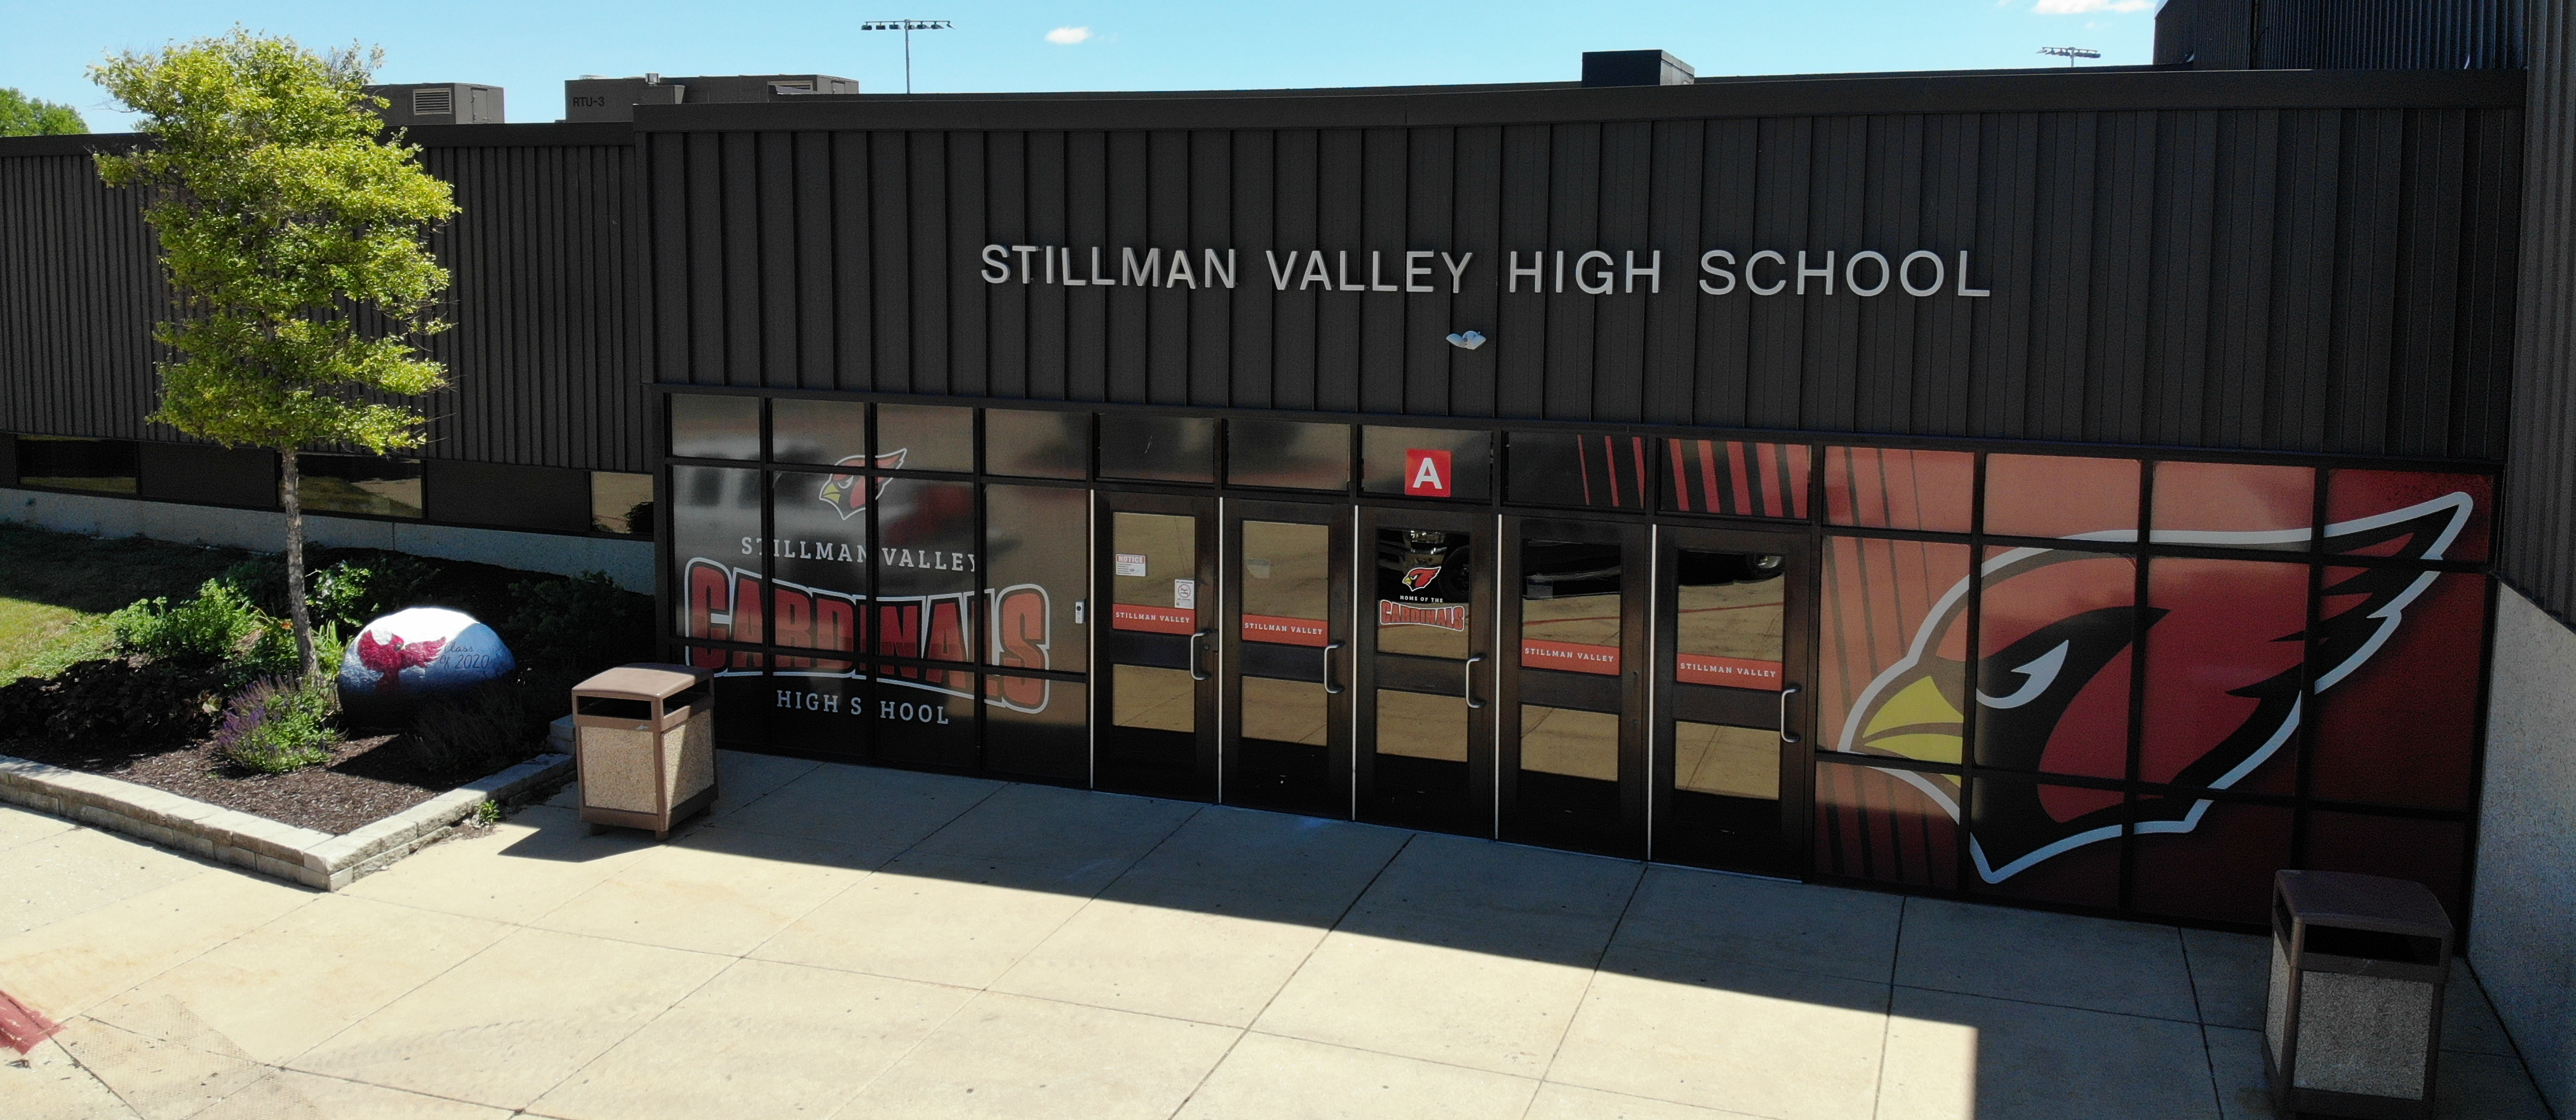 Stillman Valley High School Entrance